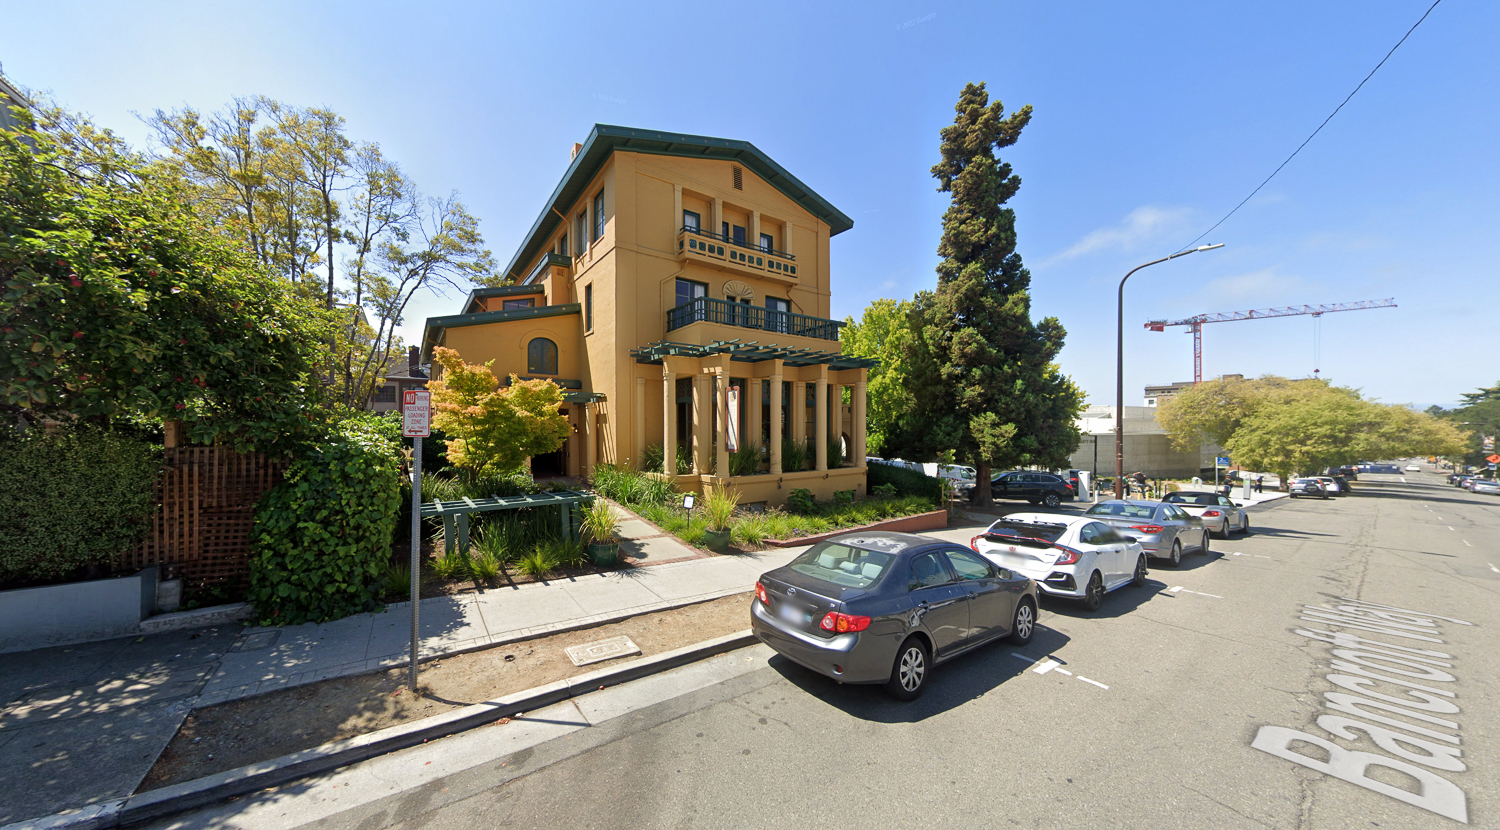 Bancroft Hotel at 2680 Bancroft Way, image via Google Street View